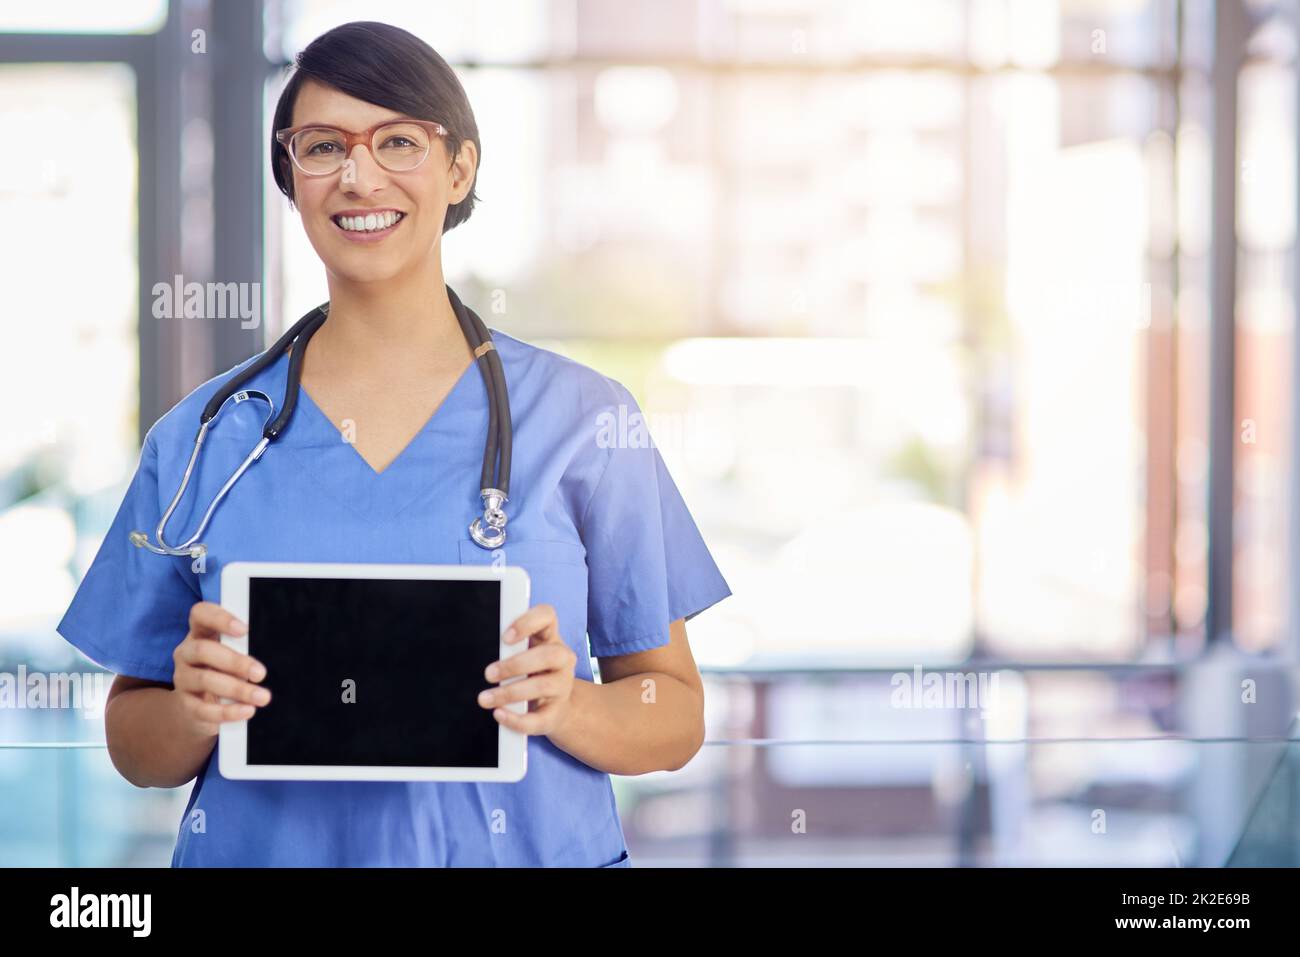 Utilisez une technologie de pointe pour améliorer les soins de santé. Portrait d'un jeune médecin tenant une tablette numérique. Banque D'Images